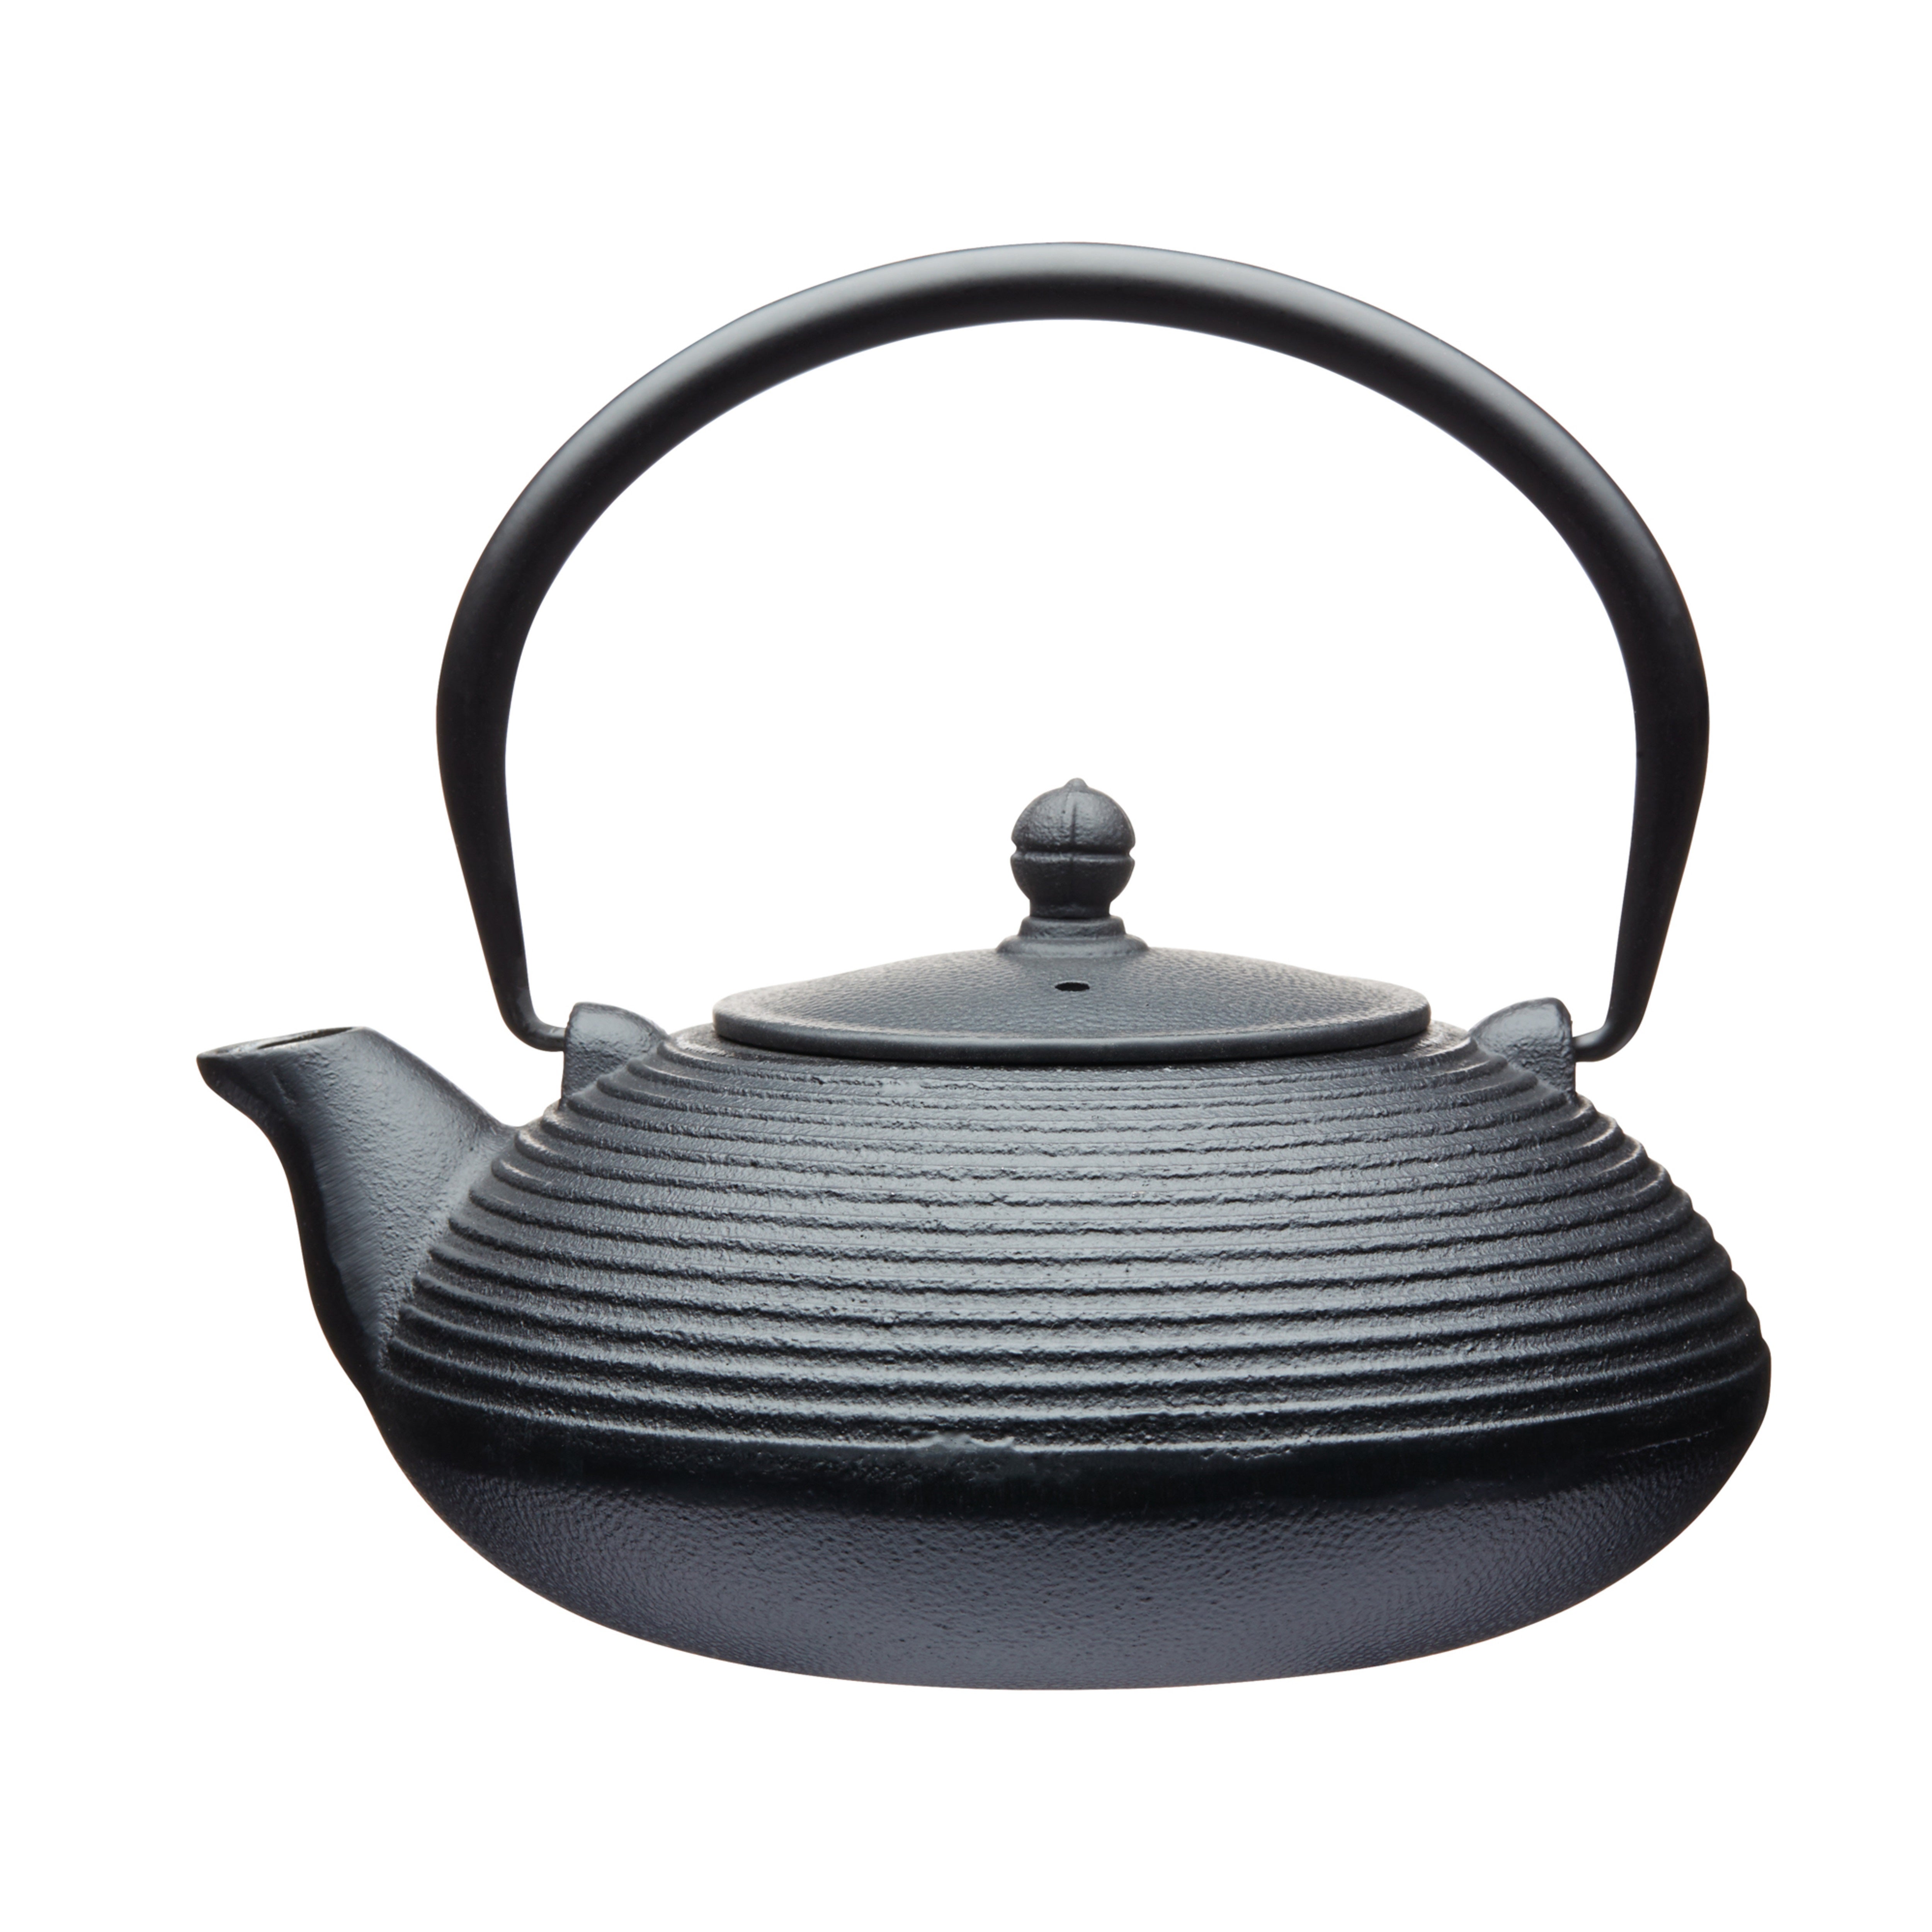 La Cafetiere Cast Iron 900ml Infuser Teapot